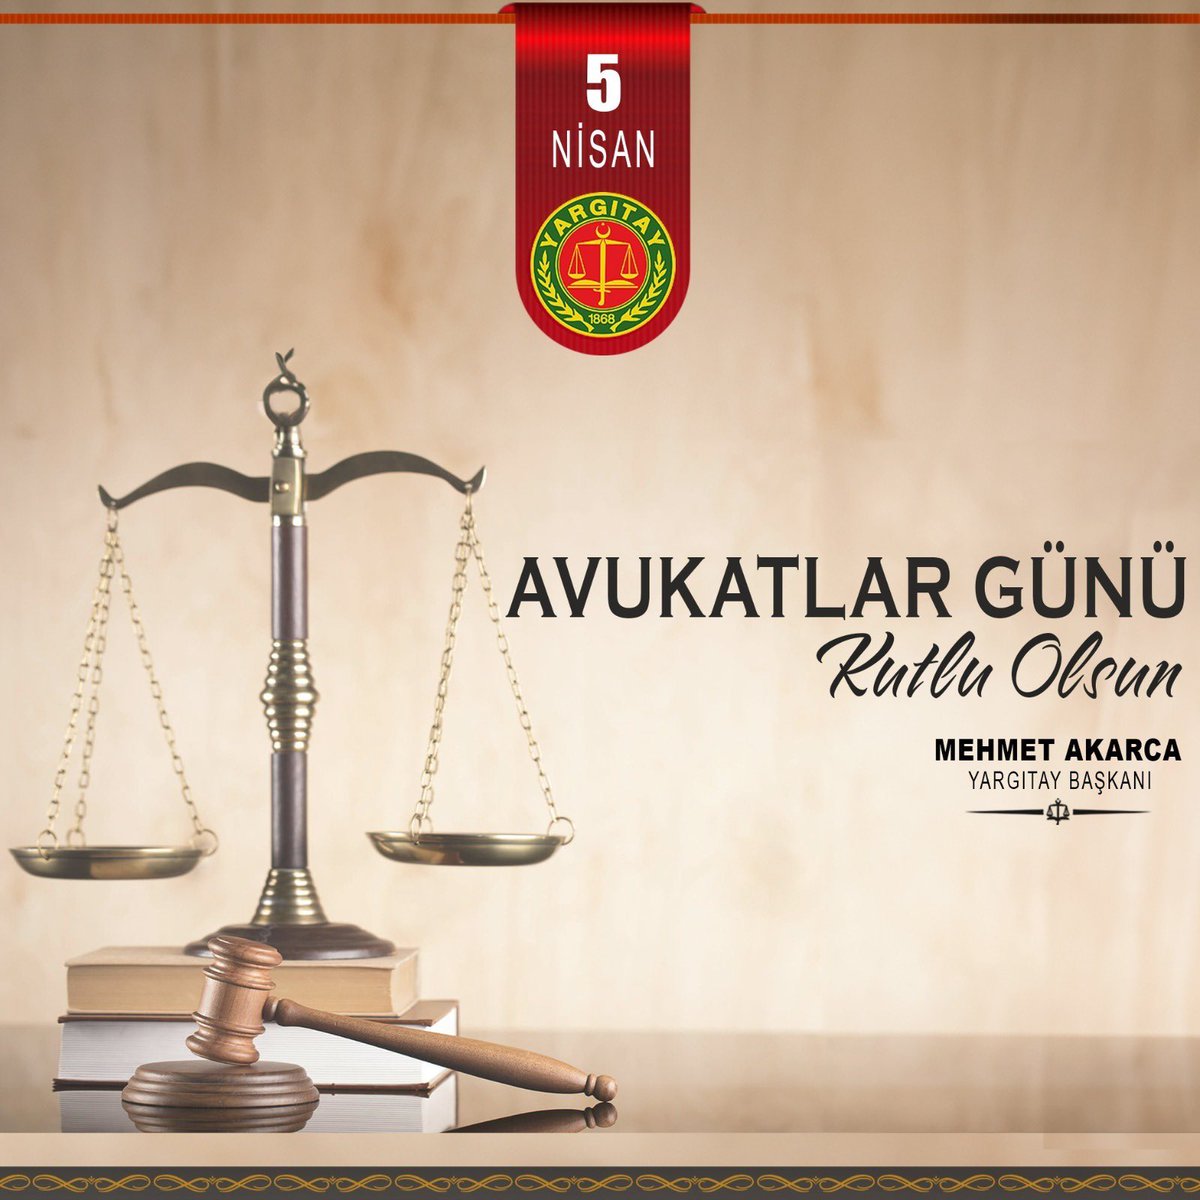 Yargıtay Başkanı Mehmet Akarca’nın 5 Nisan Avukatlar Günü’ne İlişkin Kutlama Mesajı yargitay.gov.tr/item/1791/yarg…